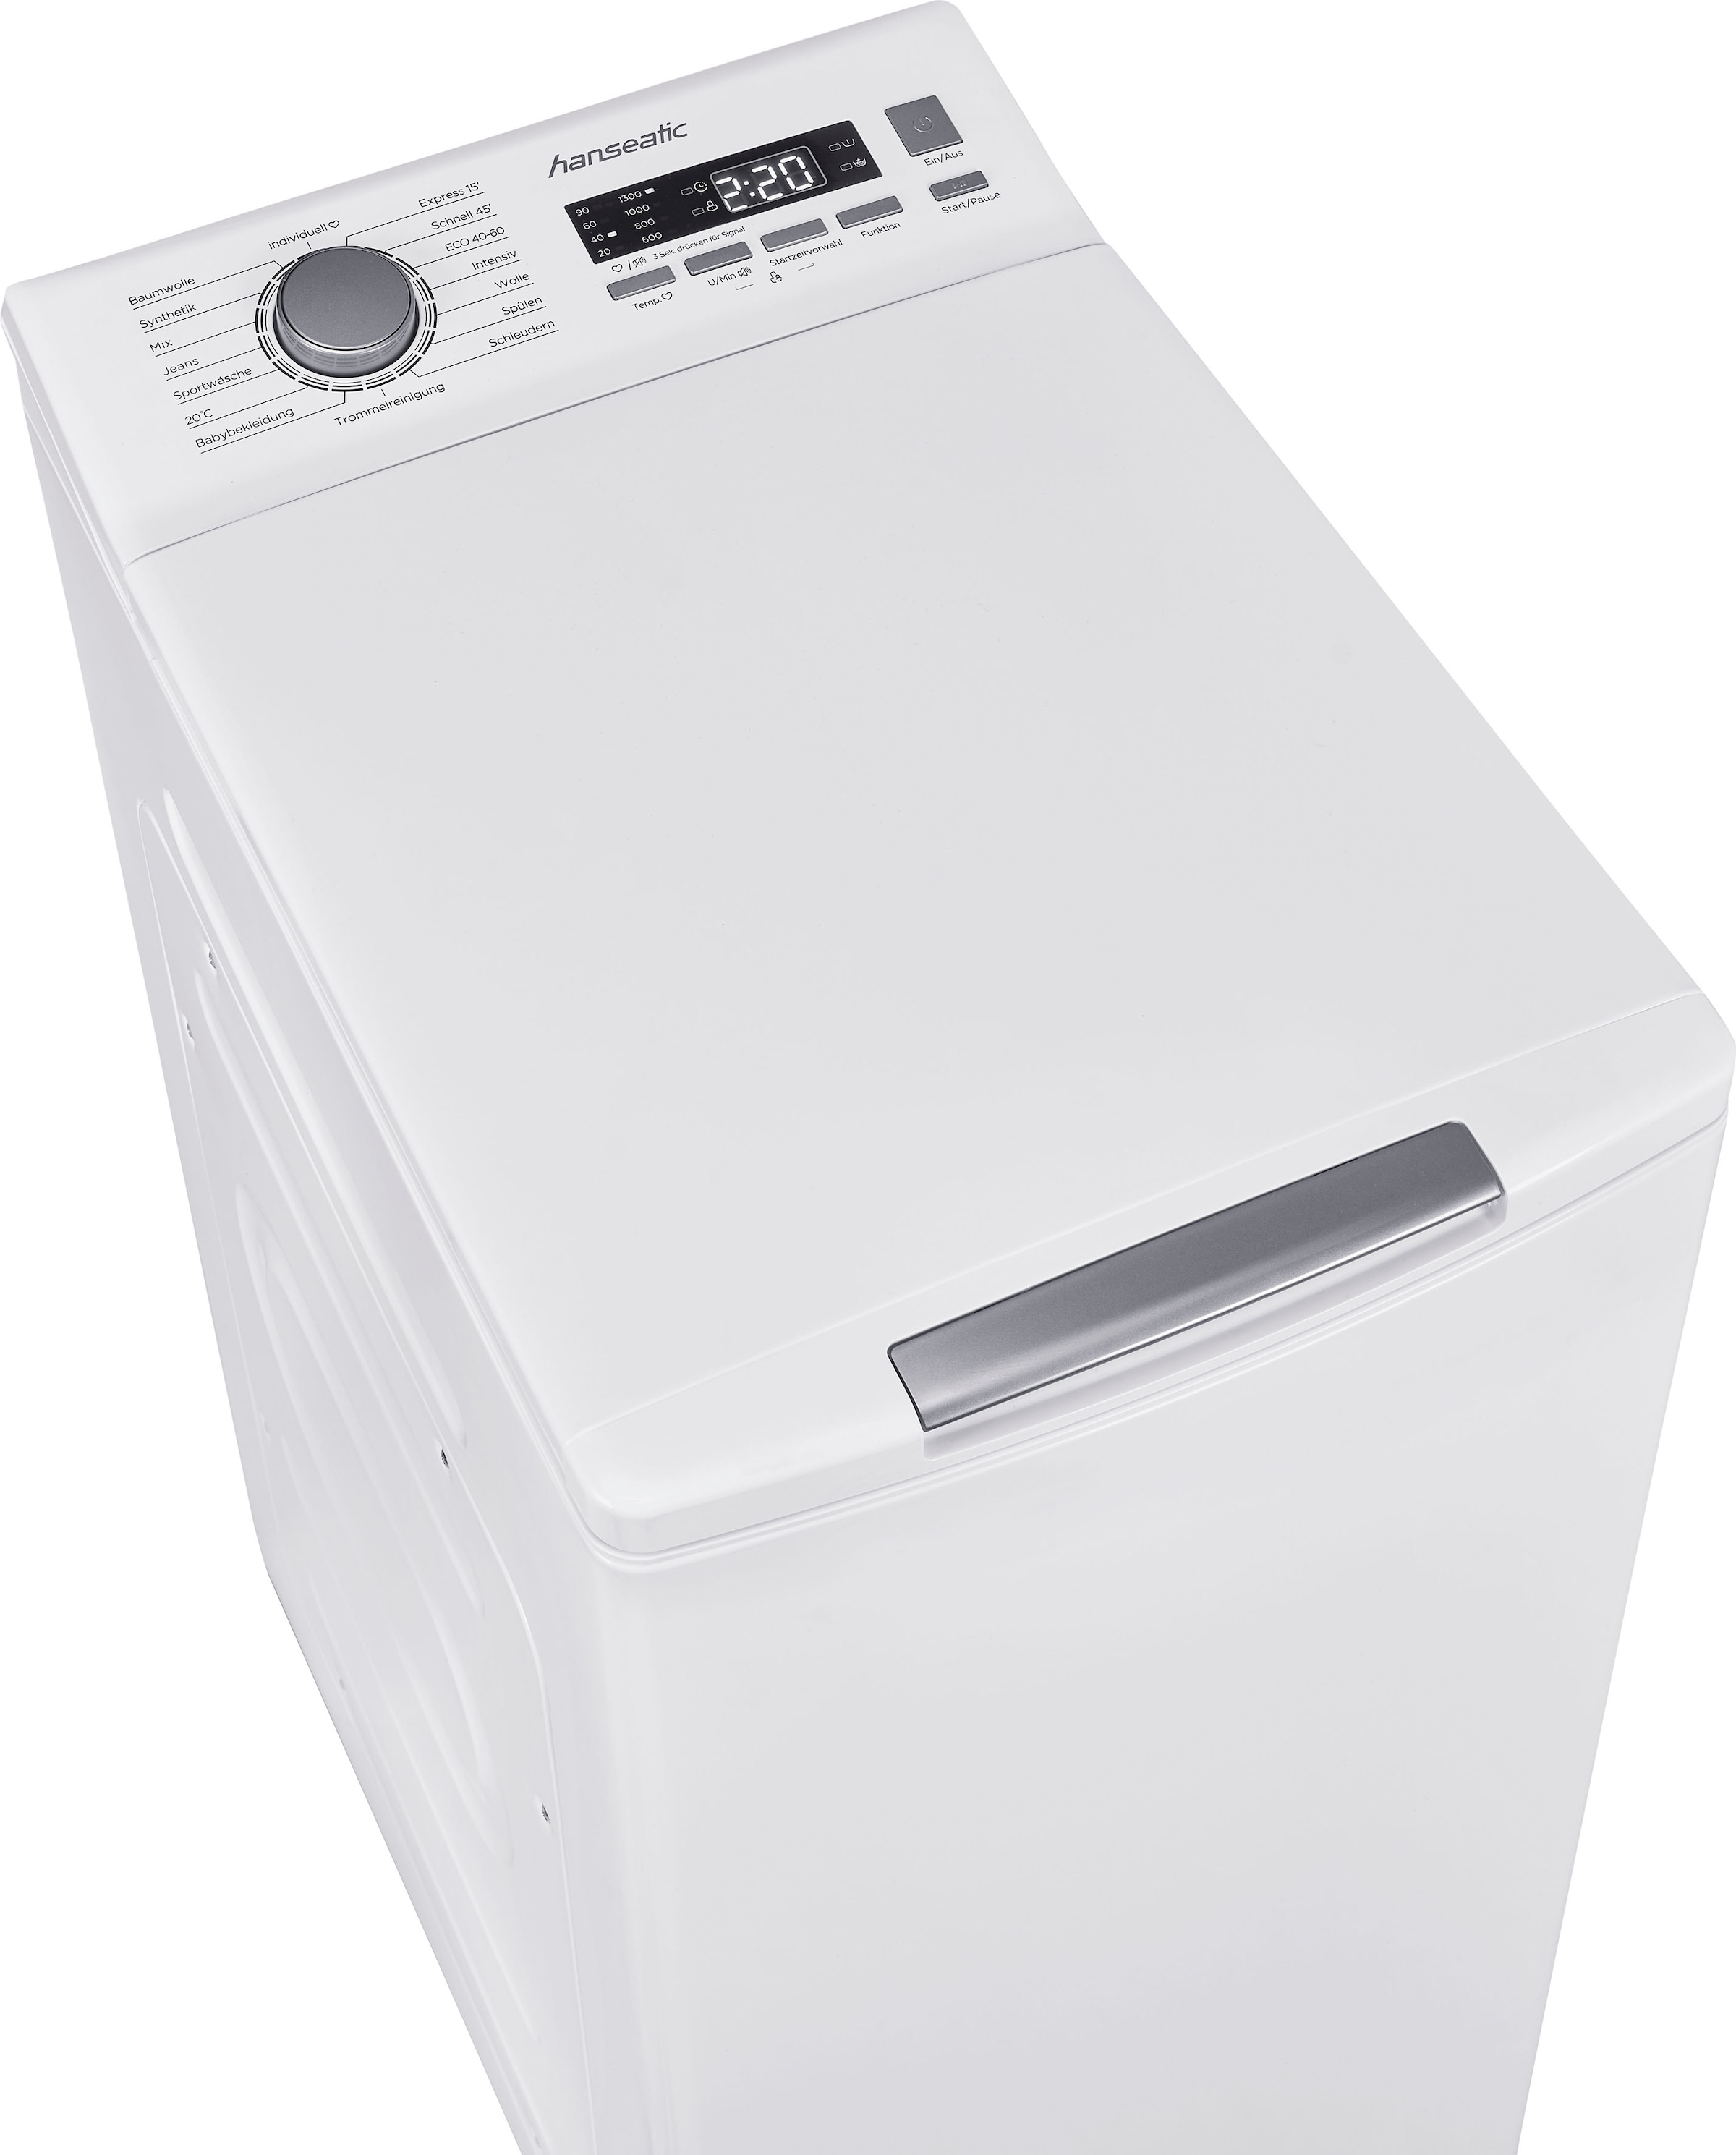 Toplader, online HTW8013C, 1300 Waschmaschine U/min, kg, kaufen Hanseatic Mengenautomatik, Überlaufschutzsystem 8